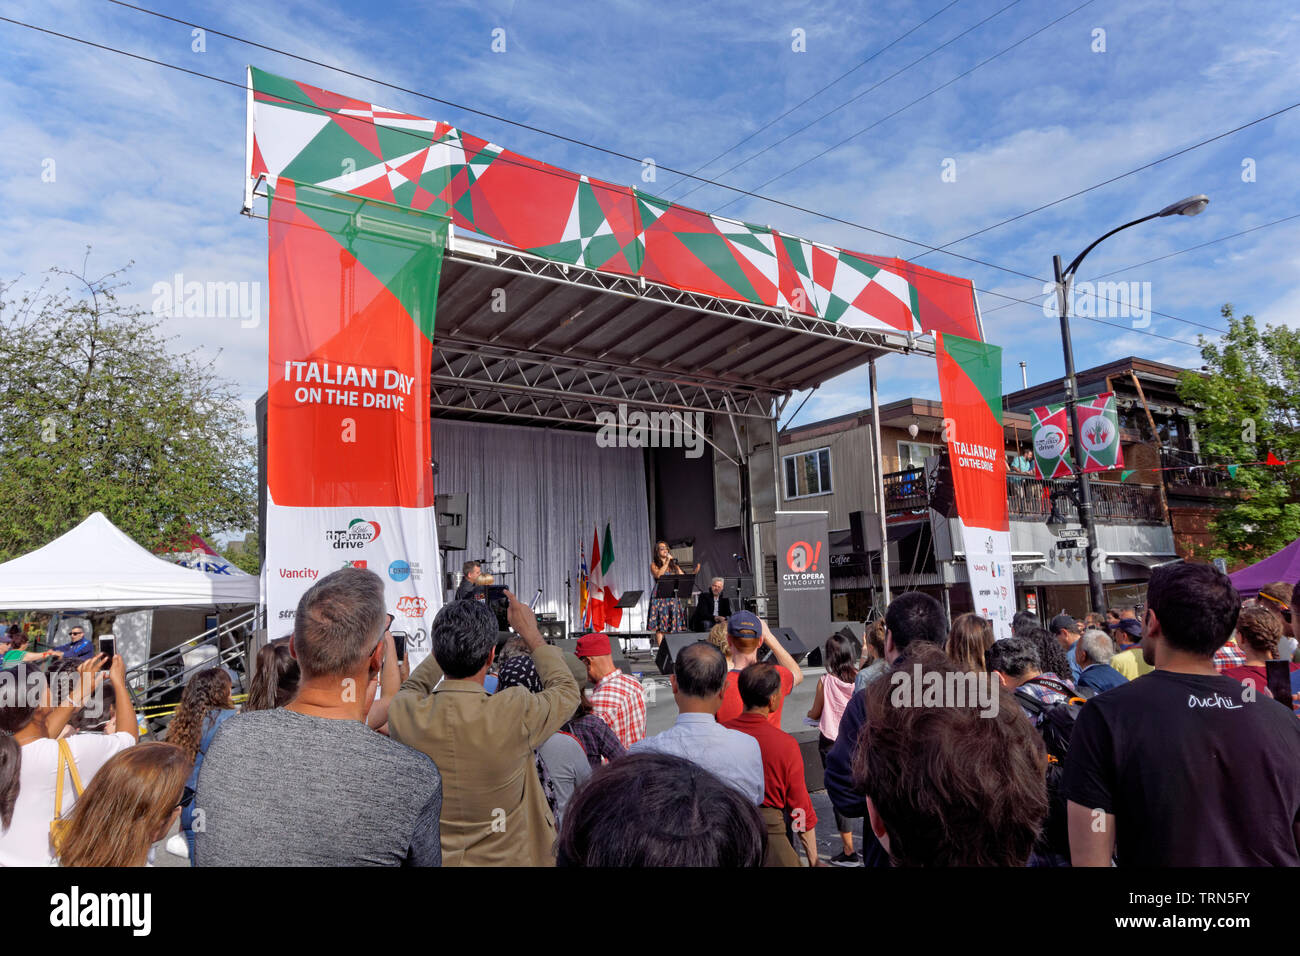 VANCOUVER, BRITISH COLUMBIA, KANADA - 9. JUNI 2019. Die Leute hören auf einen Opernsänger, der freilichtbühne am 2019 Italienischer Tag Festival auf Commercial Drive in Vancouver's Viertel Little Italy. Italienischer Tag ist das größte jährliche kulturelle Street Festival. Stockfoto